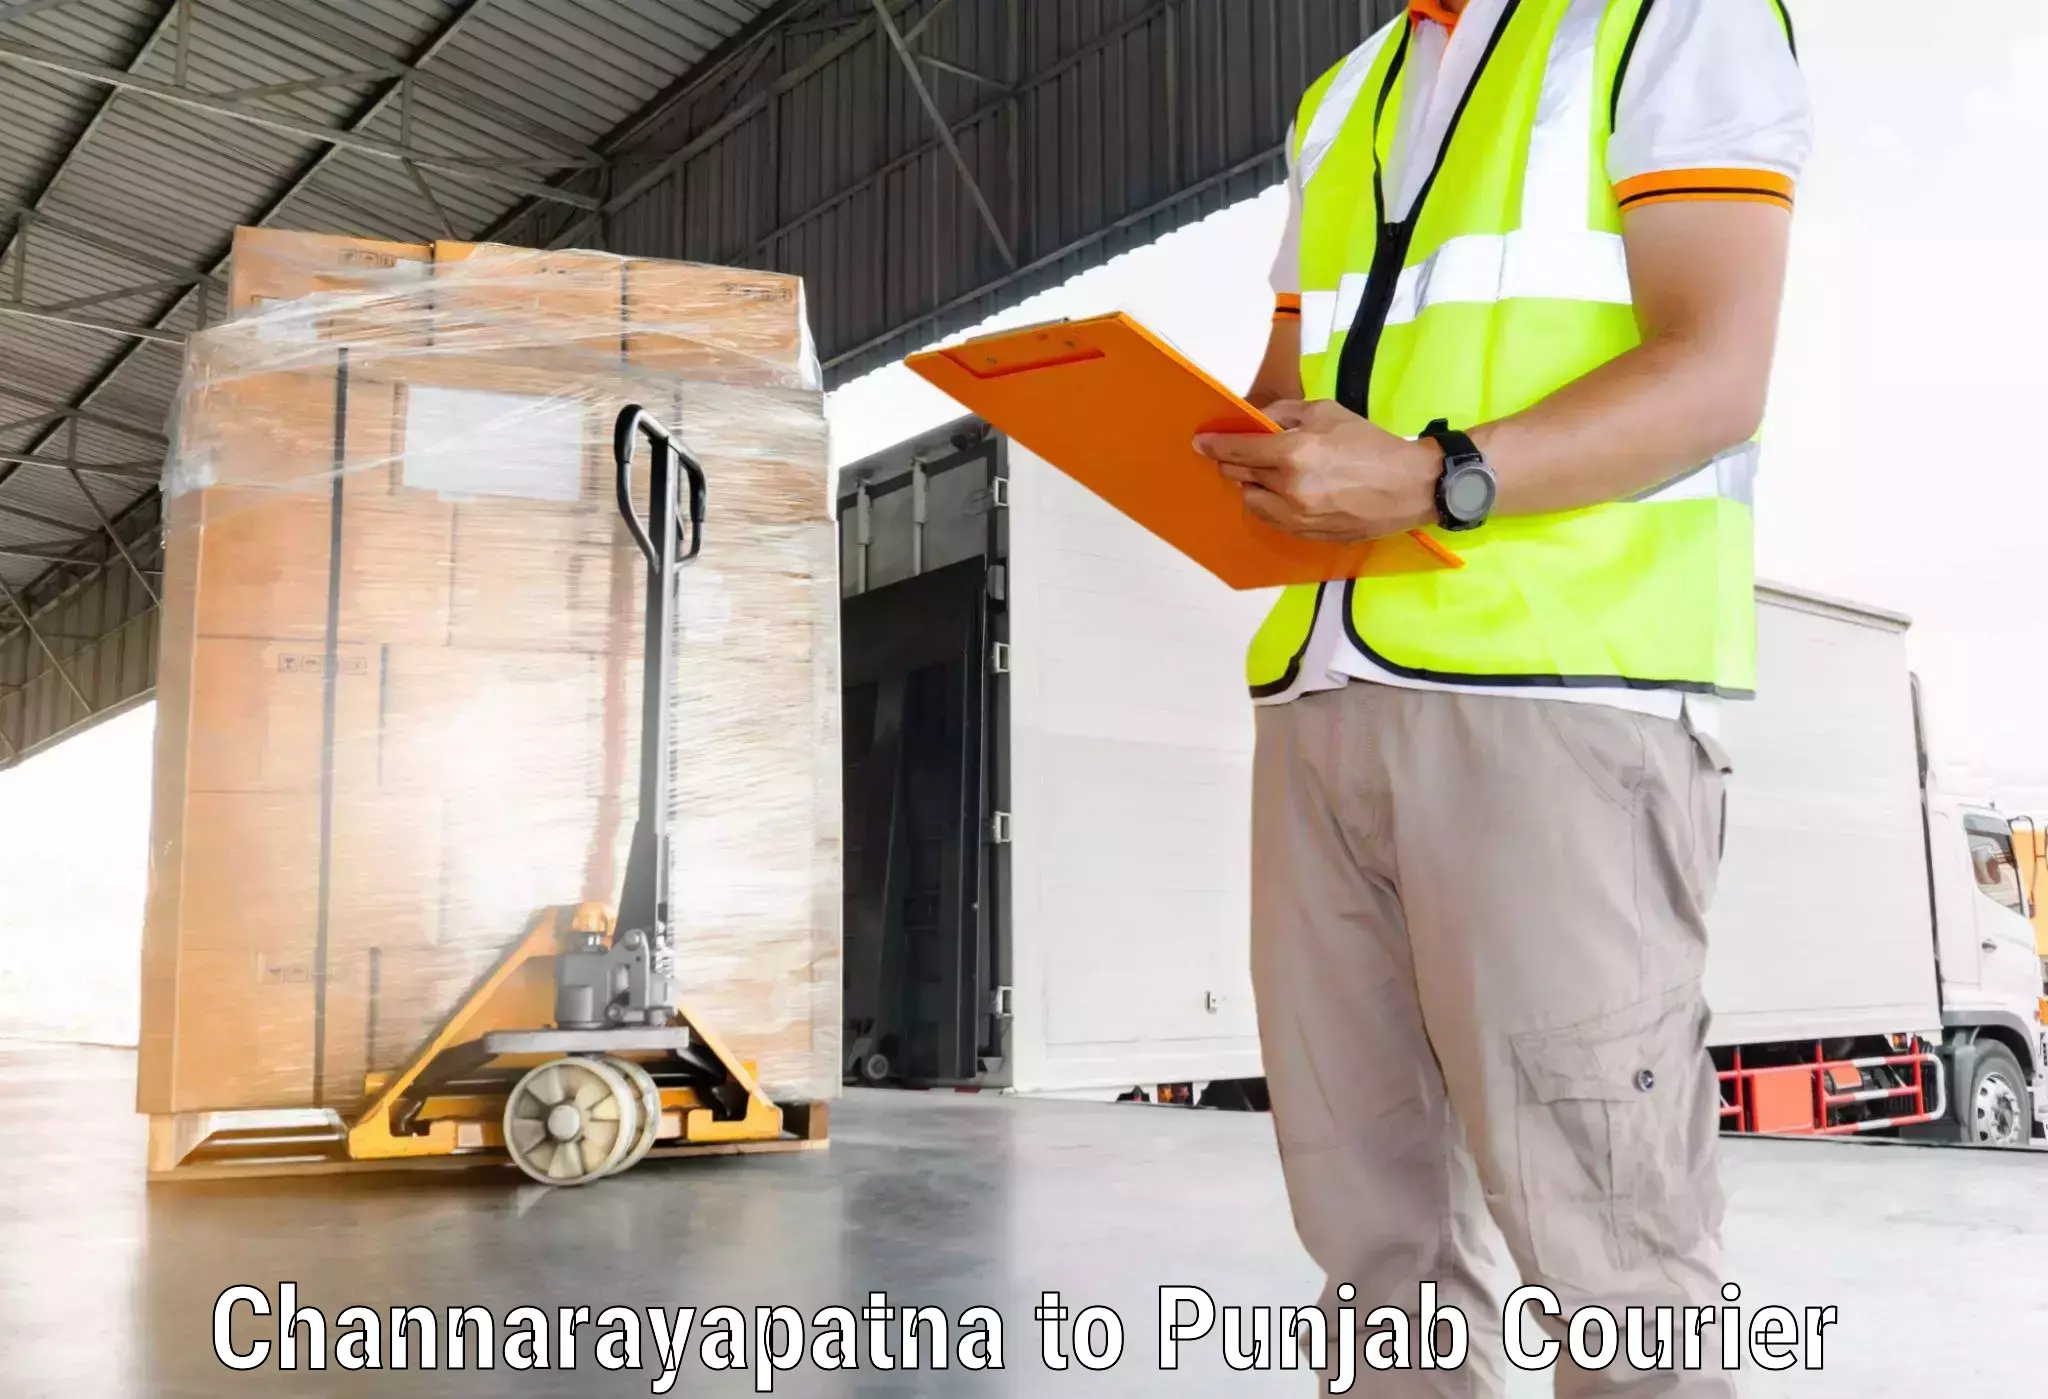 Courier service efficiency Channarayapatna to Mohali